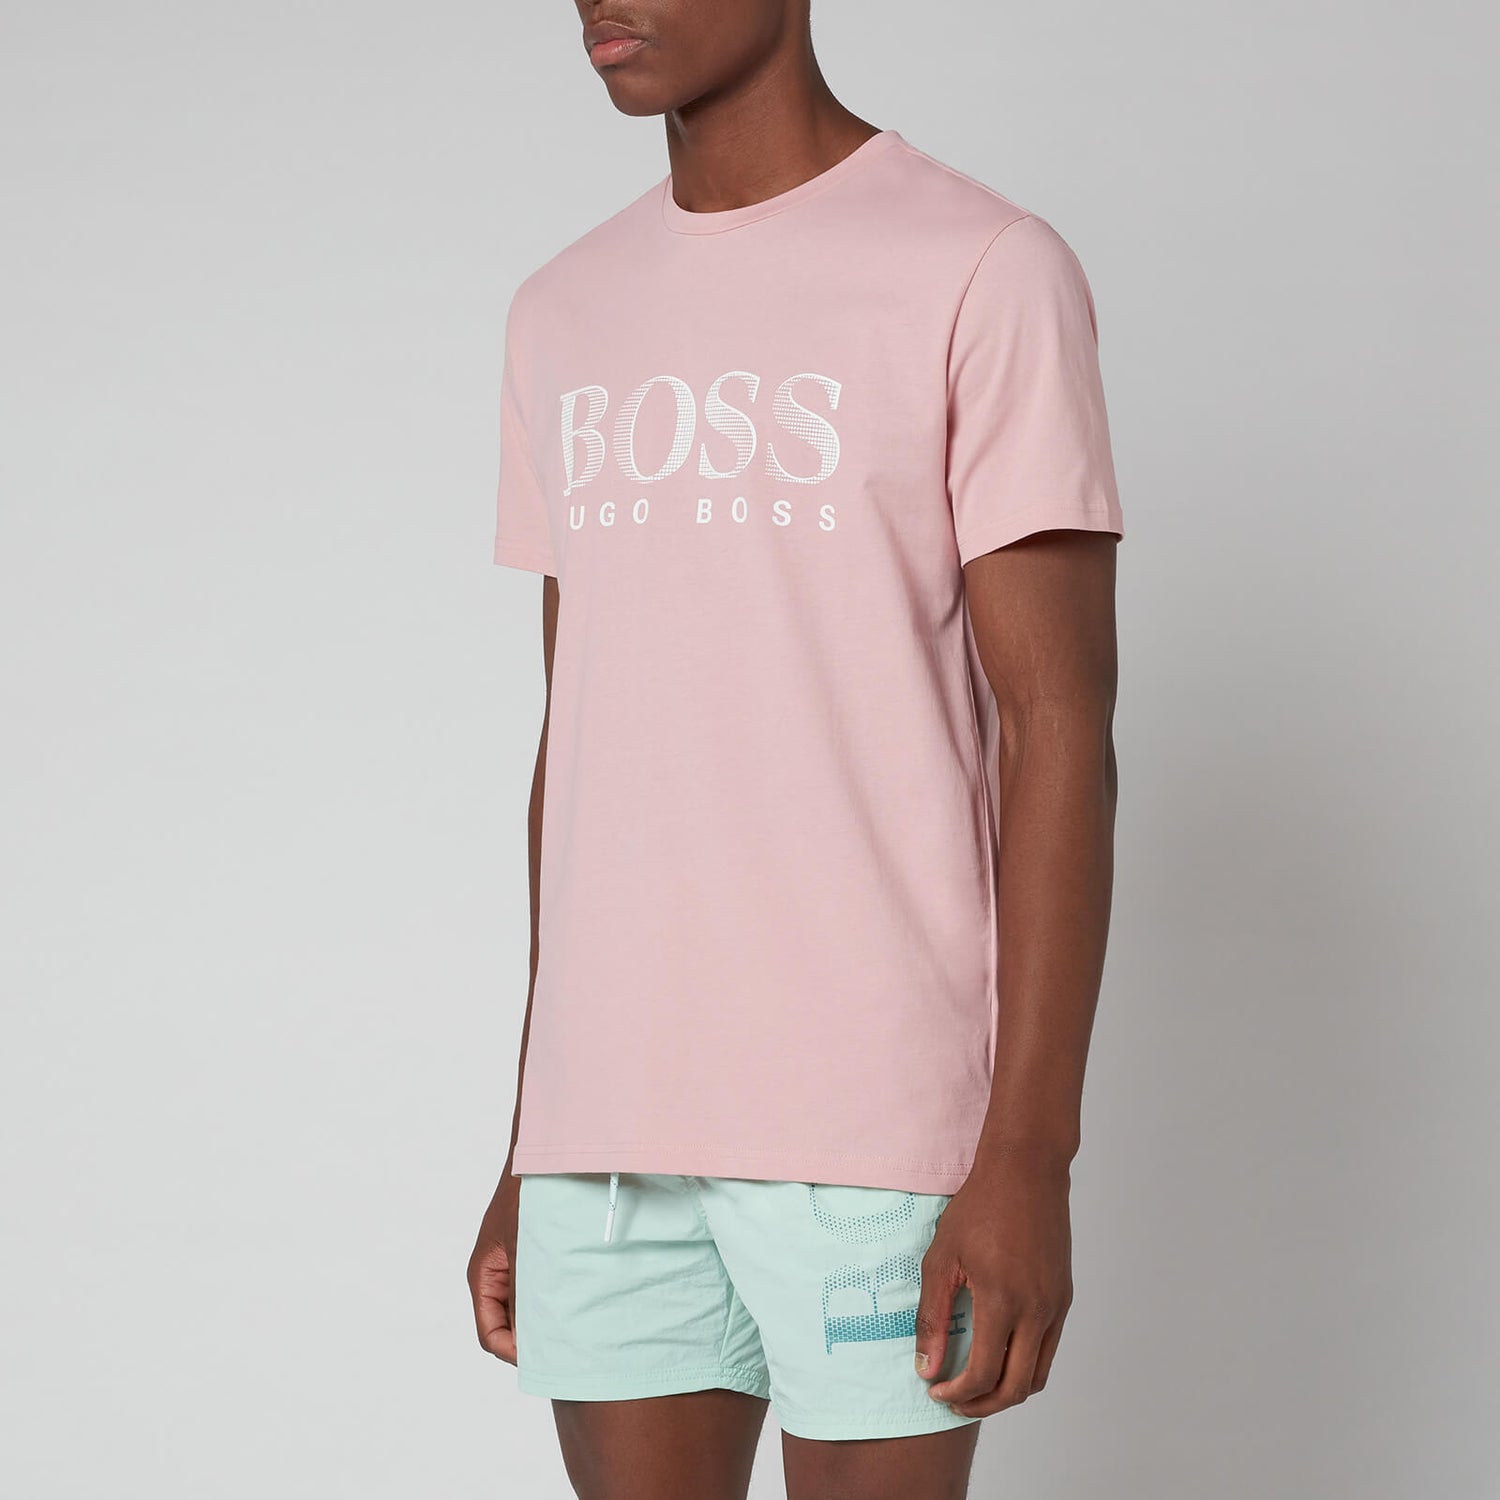 BOSS Bodywear Men's Relaxed Fit Upf 50+ T-Shirt - Open Pink